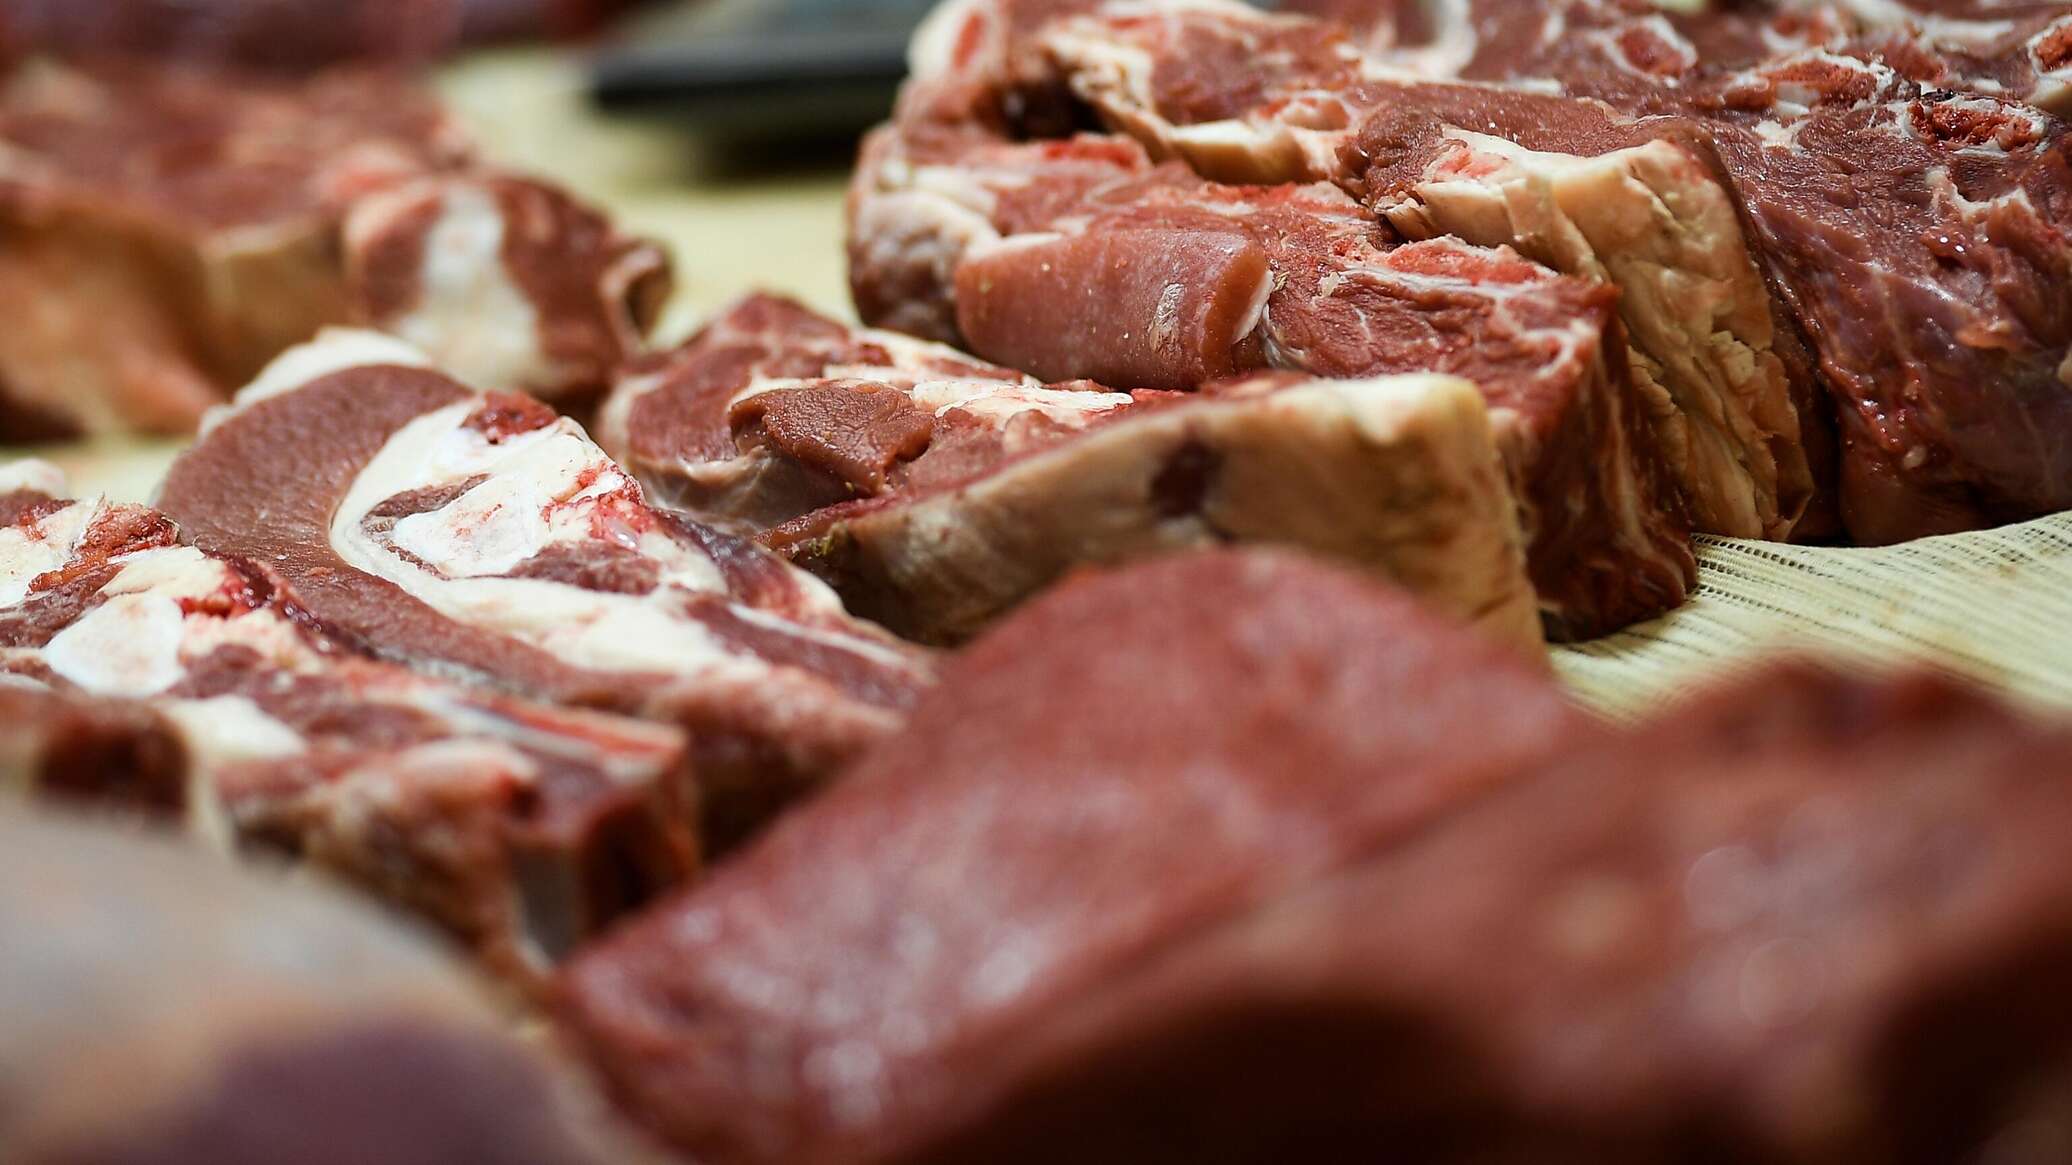 Meat video. Рынок мясной продукции. Мясо 2021.